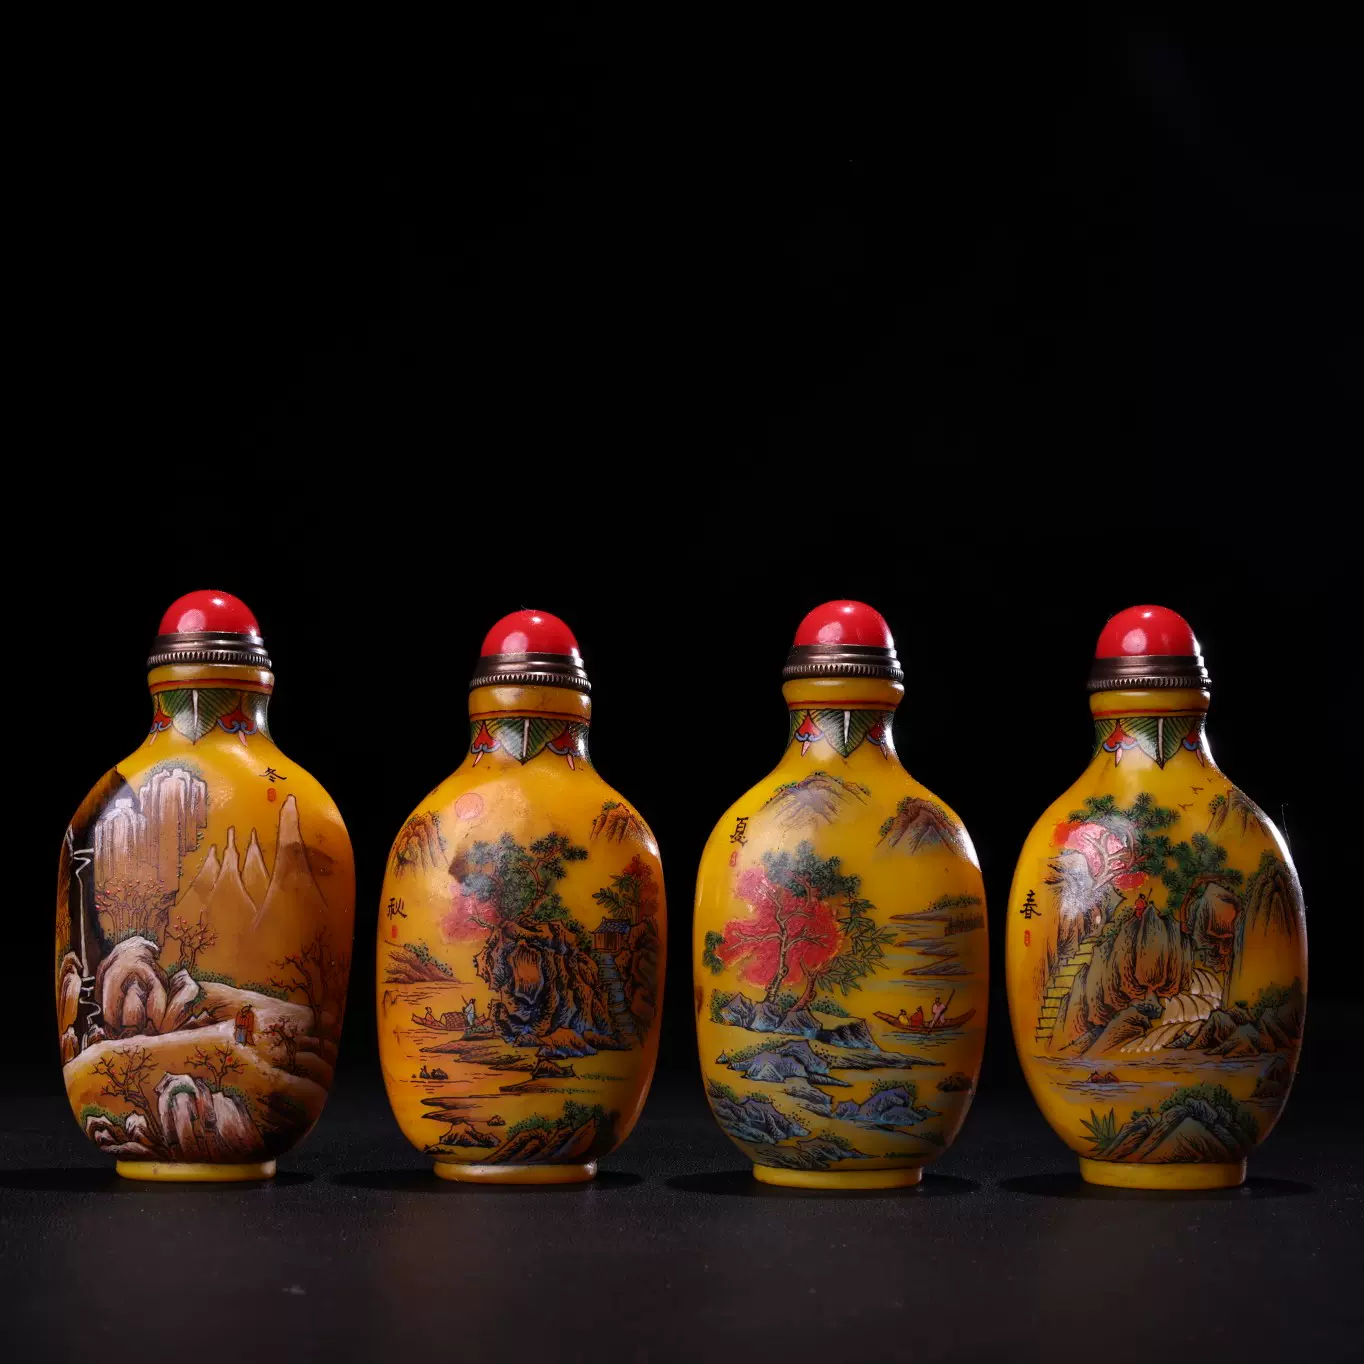 一口价民间古玩古董收藏手绘四季山水琉璃鼻烟壶一套包邮-Taobao